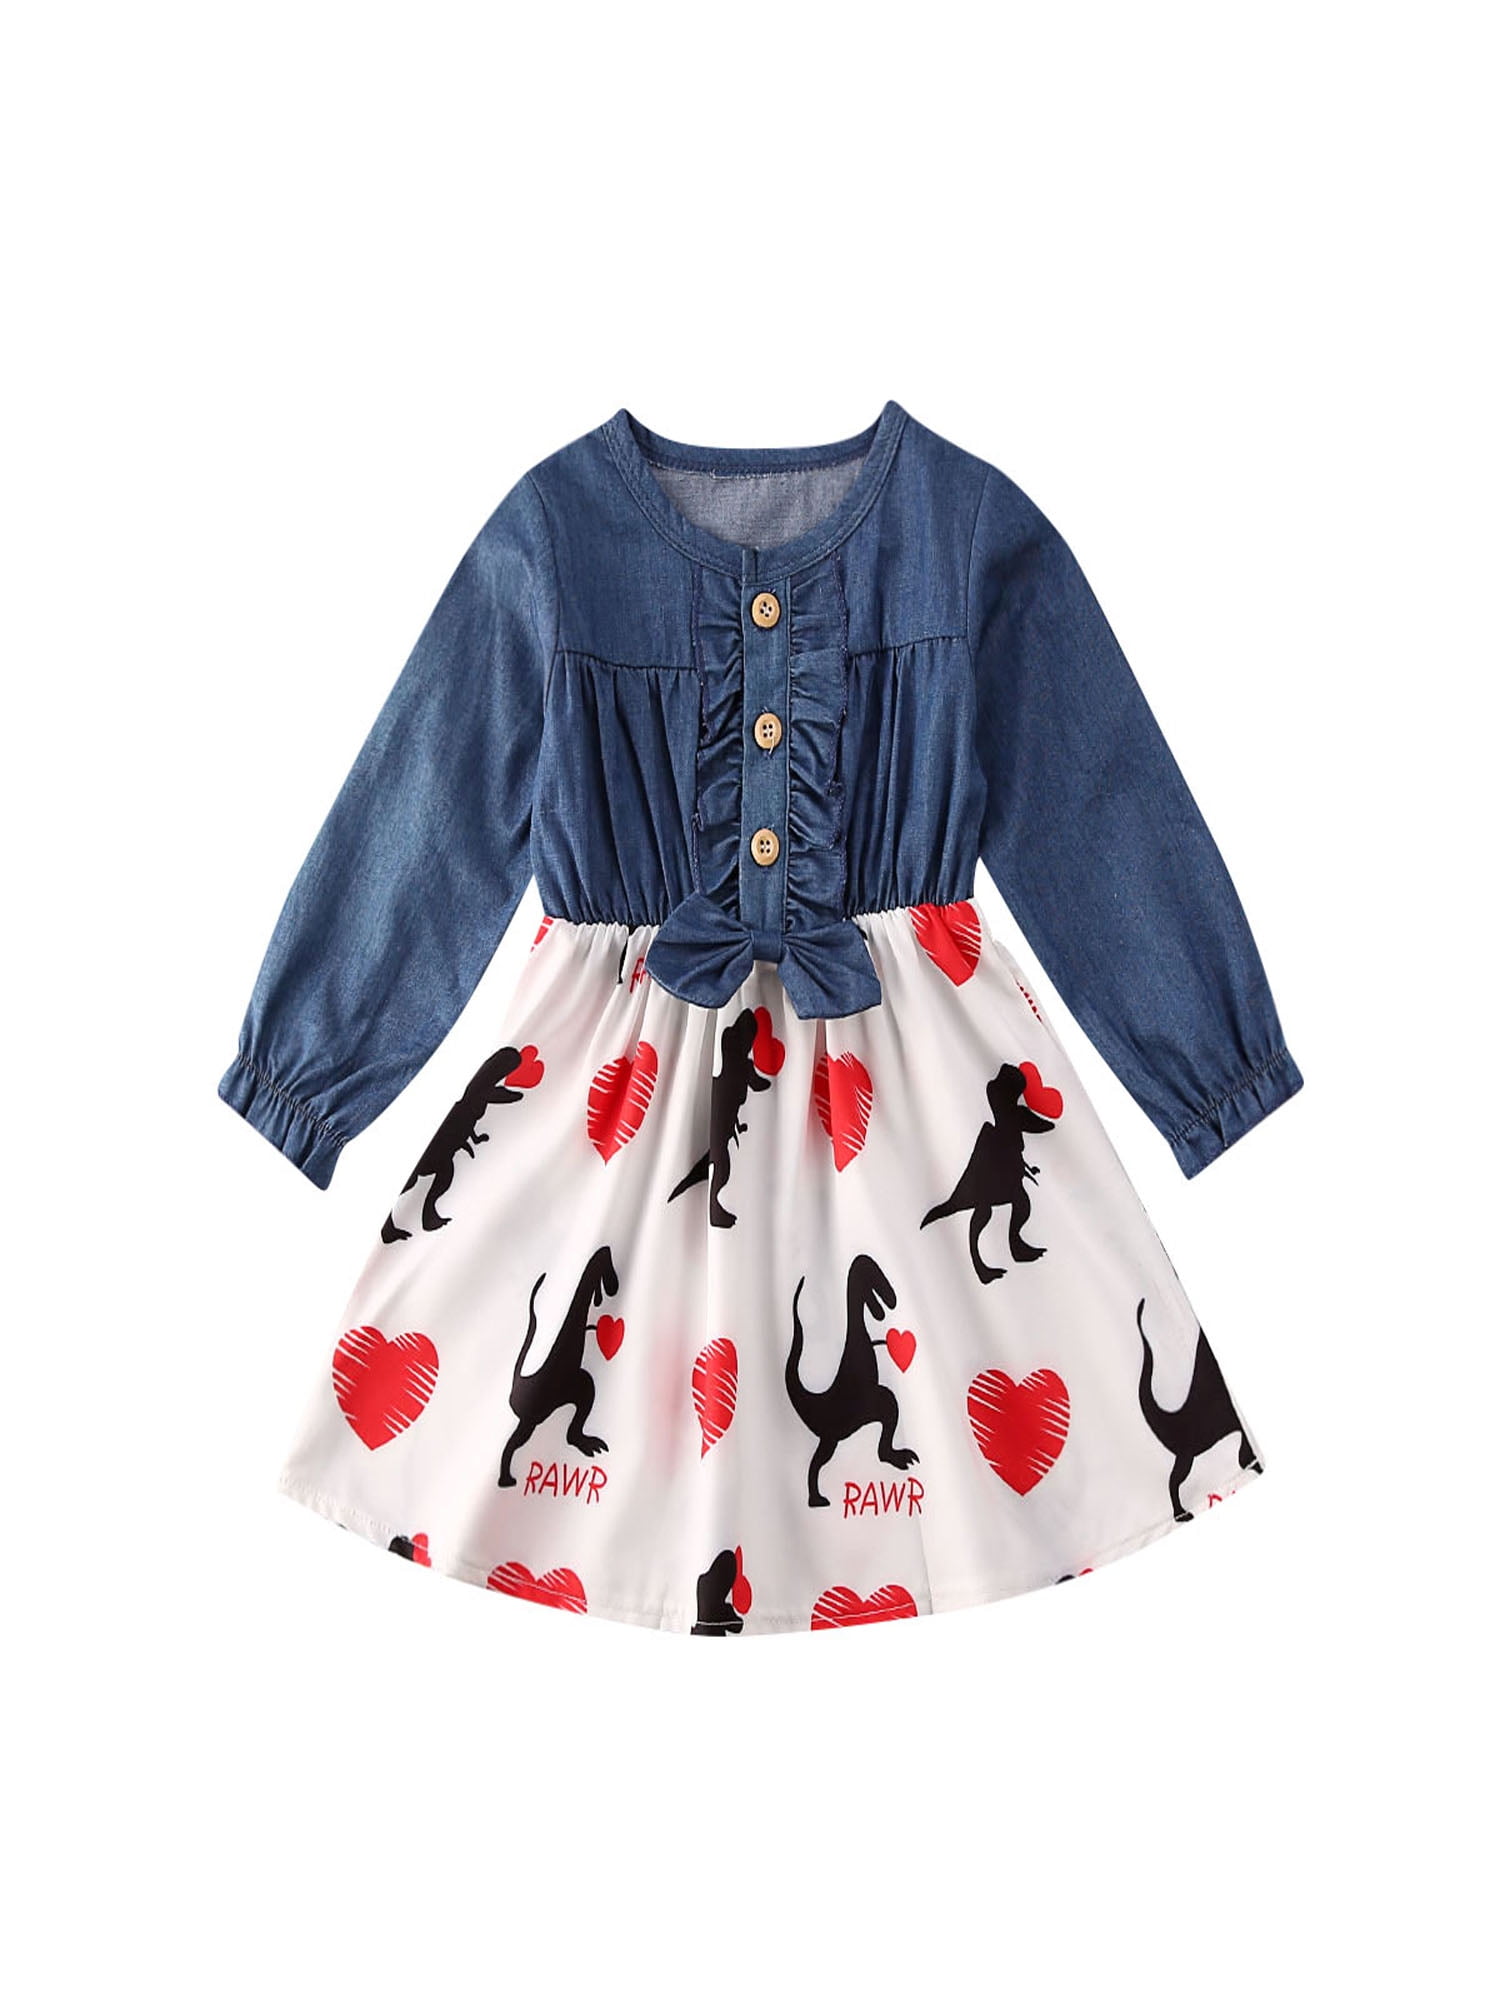 Jchen Little Girl Dress Toddler Little Girls Long Sleeve Cartoon Dinosaur Print Dress Outfits Clothes for 1-5 Y TM